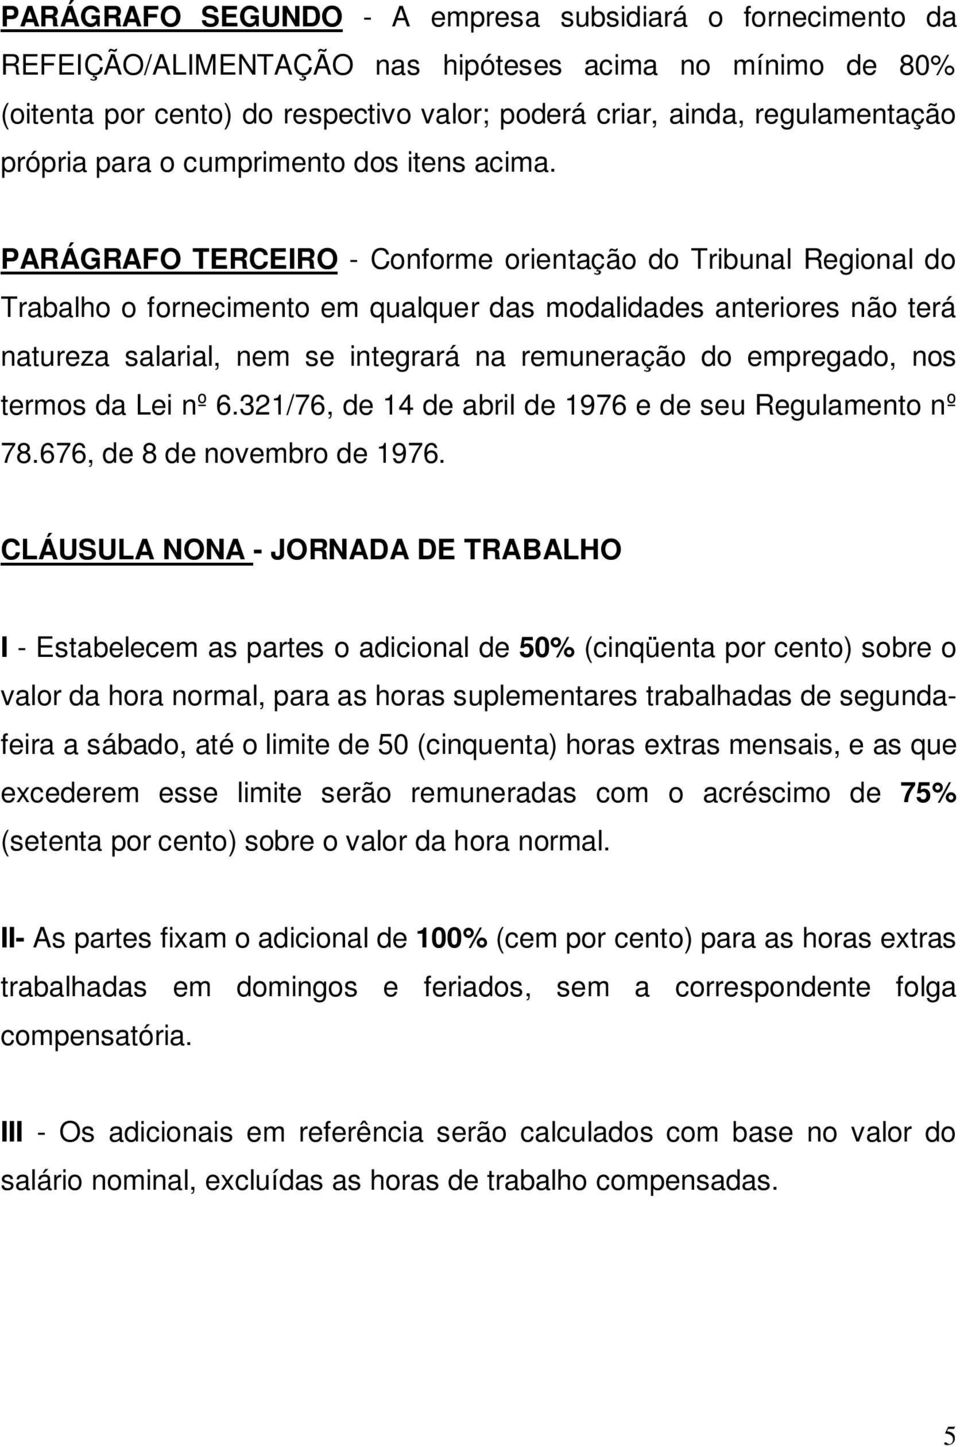 PARÁGRAFO TERCEIRO - Conforme orientação do Tribunal Regional do Trabalho o fornecimento em qualquer das modalidades anteriores não terá natureza salarial, nem se integrará na remuneração do